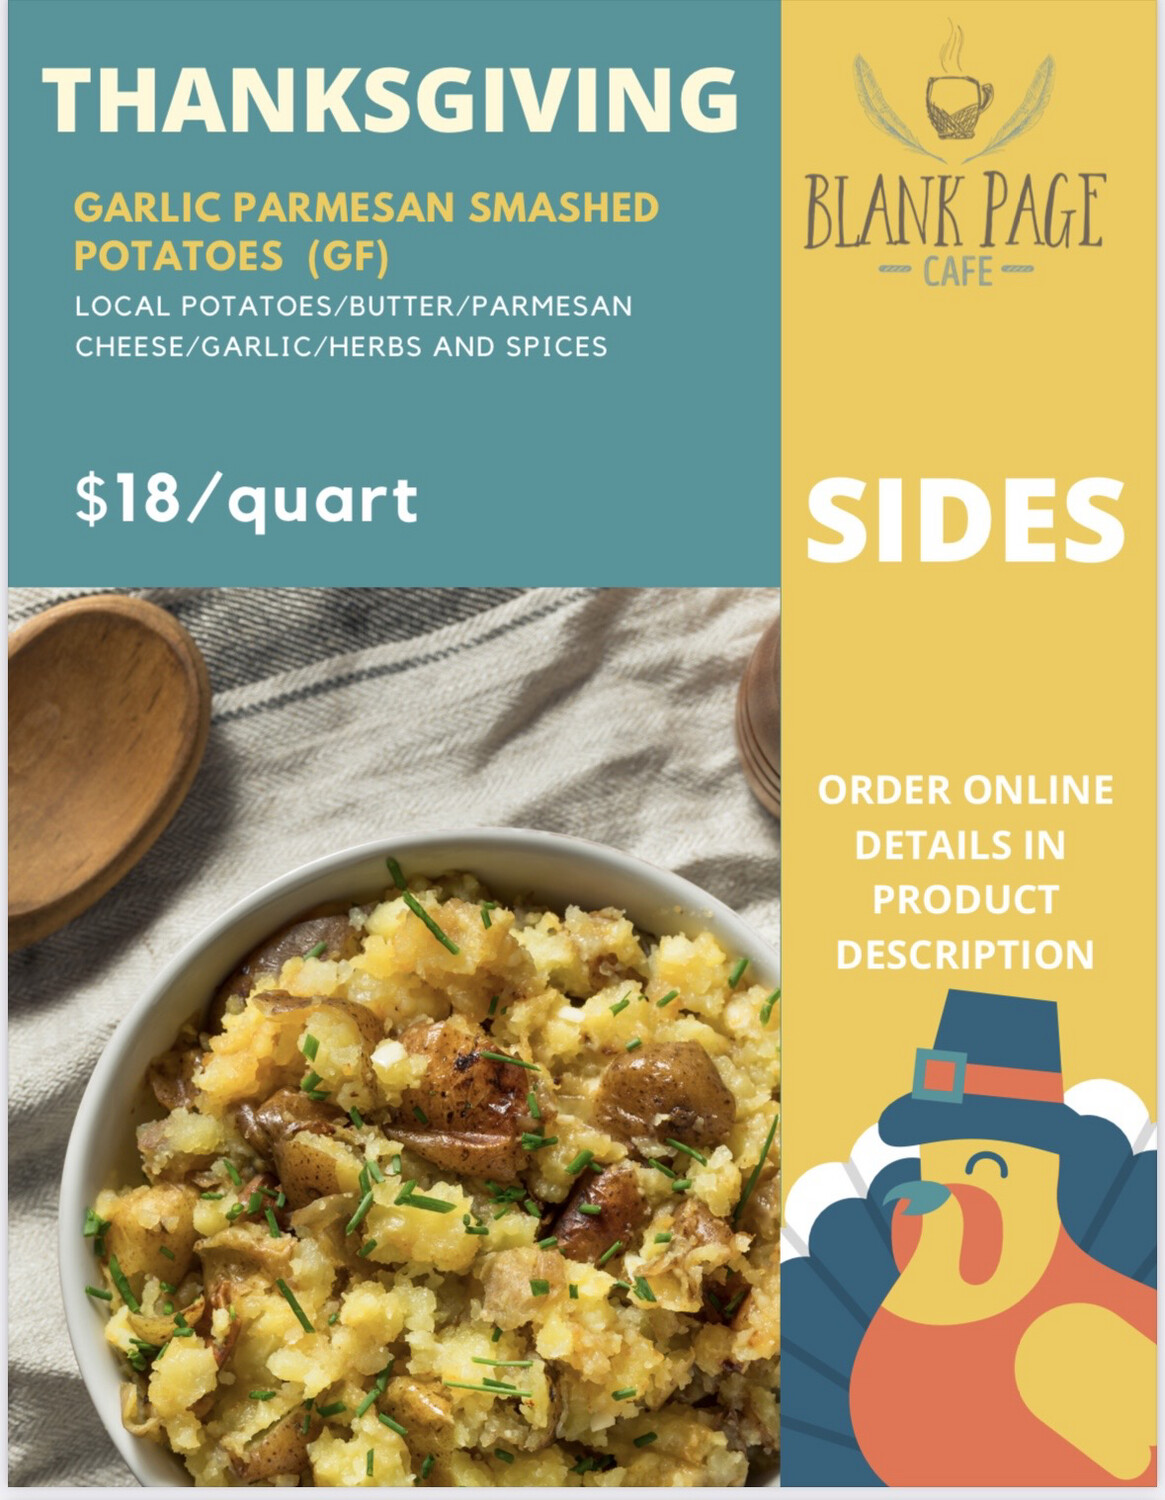 THANKSGIVING SIDE #1 - Garlic Parmesan Smashed Potatoes (1 Quart, 4-6 servings)